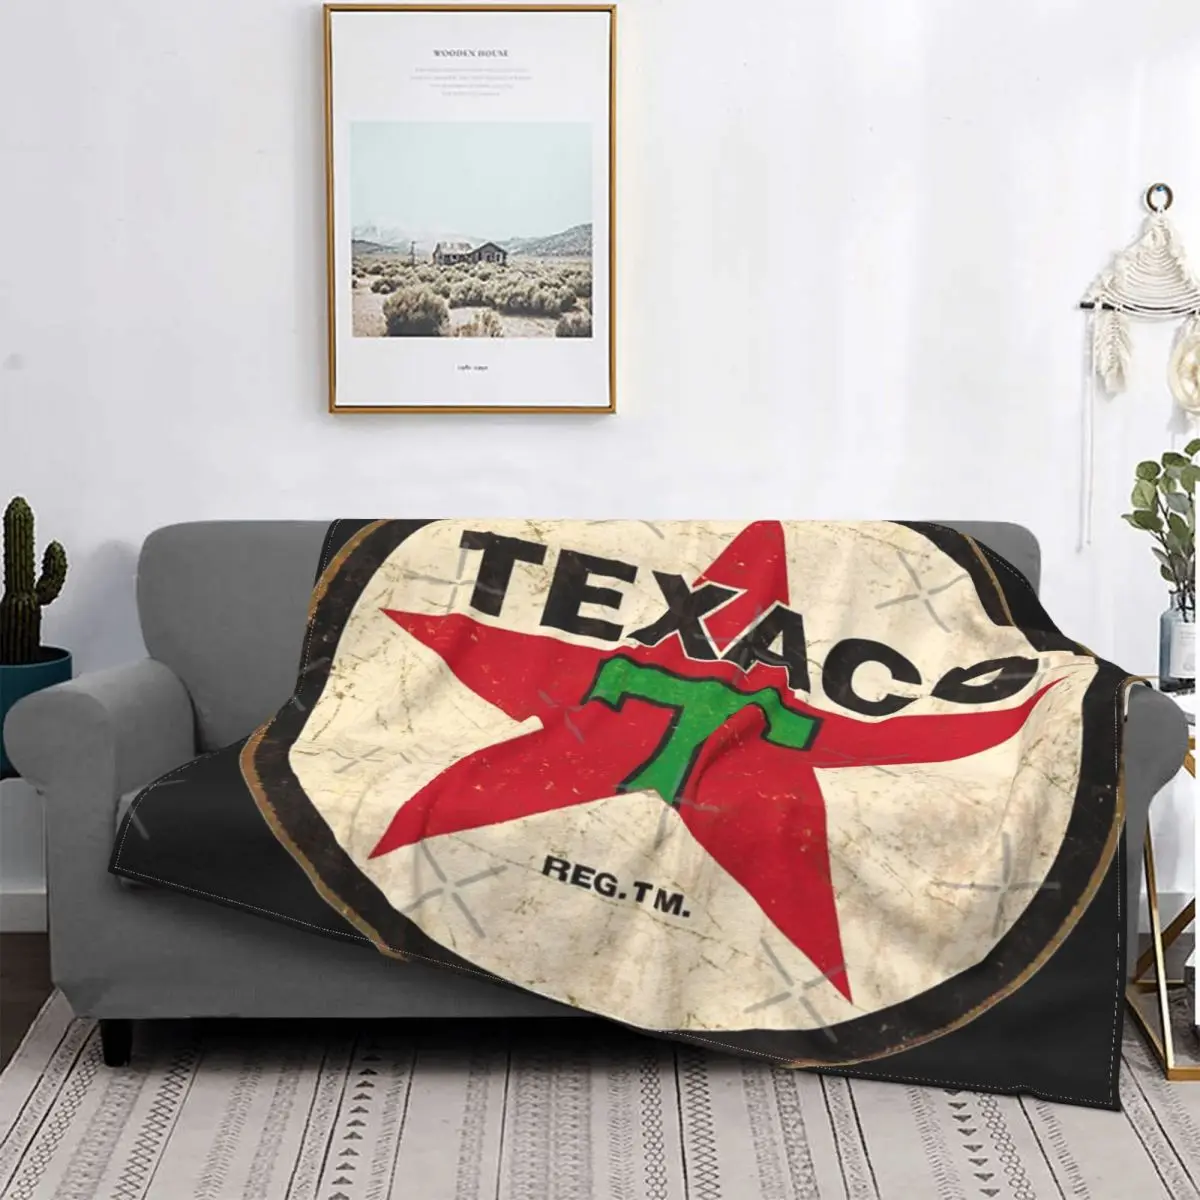 

Texaco-винтажное одеяло со знаком, покрывало на кровать, клетчатое покрывало на кровать, покрывала, кавайное одеяло, утяжеленное одеяло